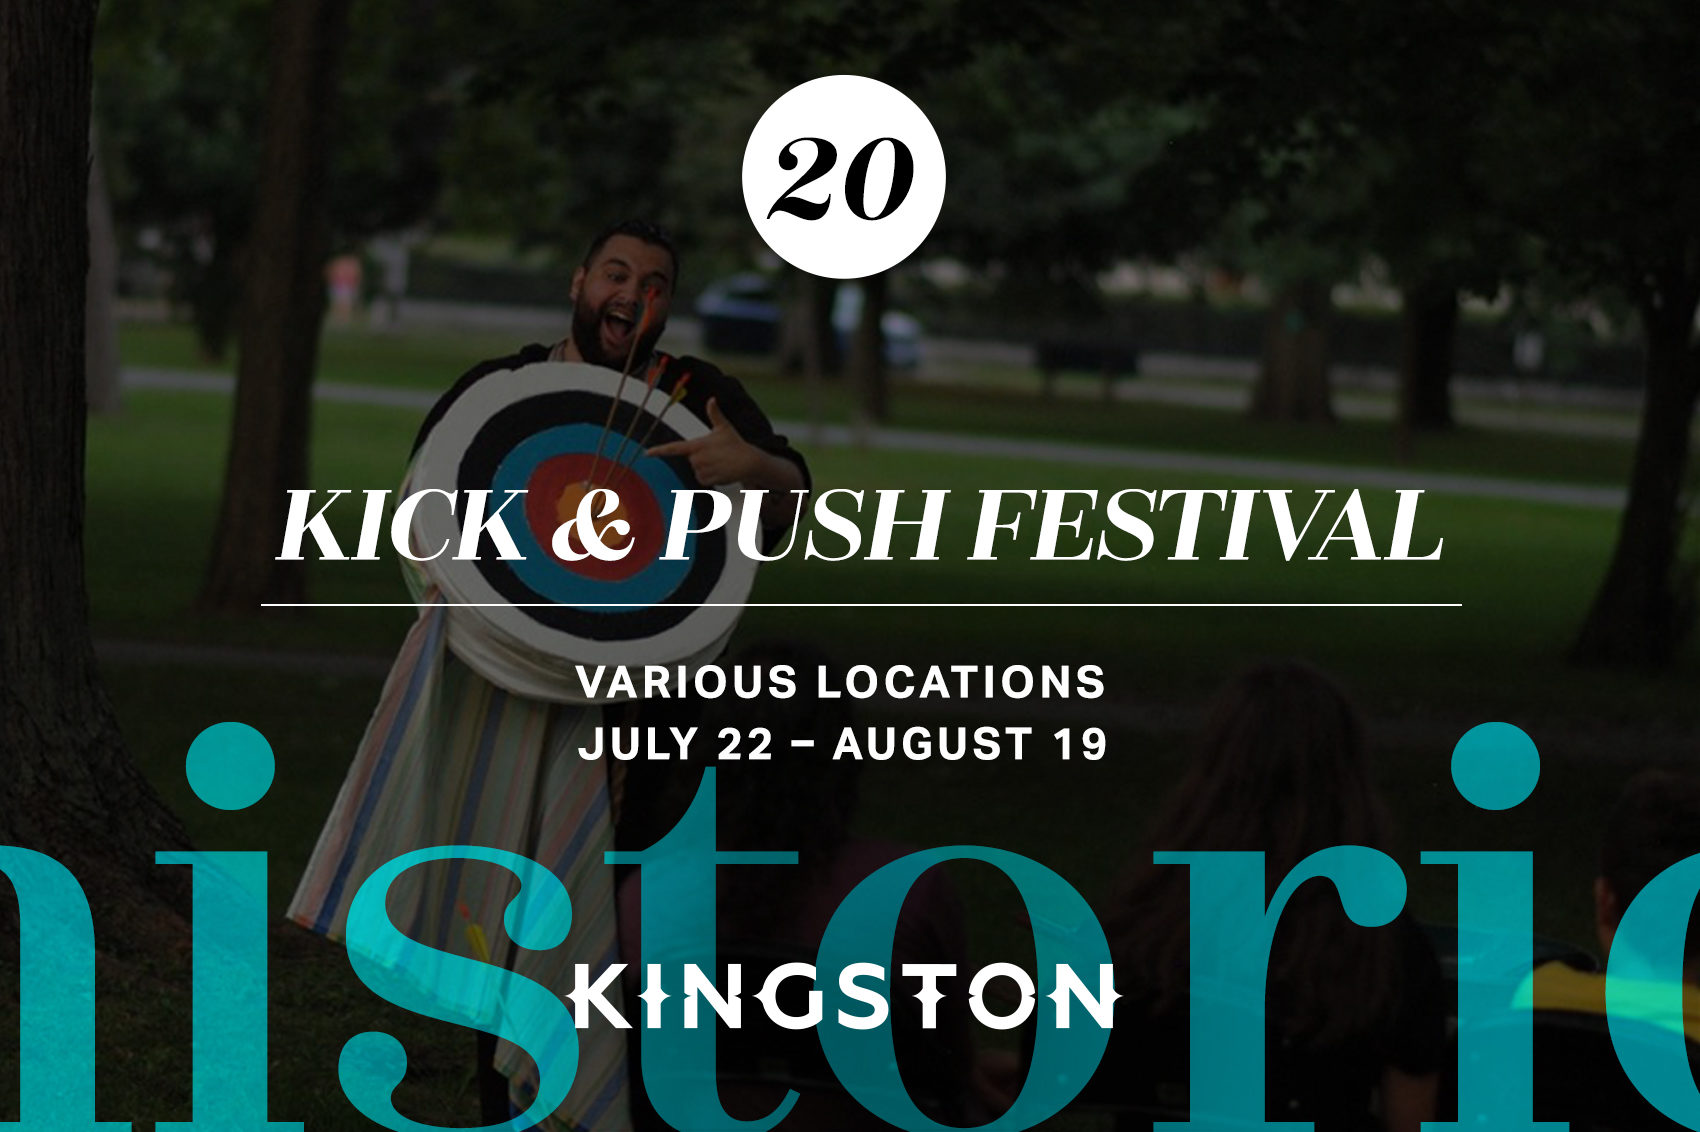 Kick & Push Festival